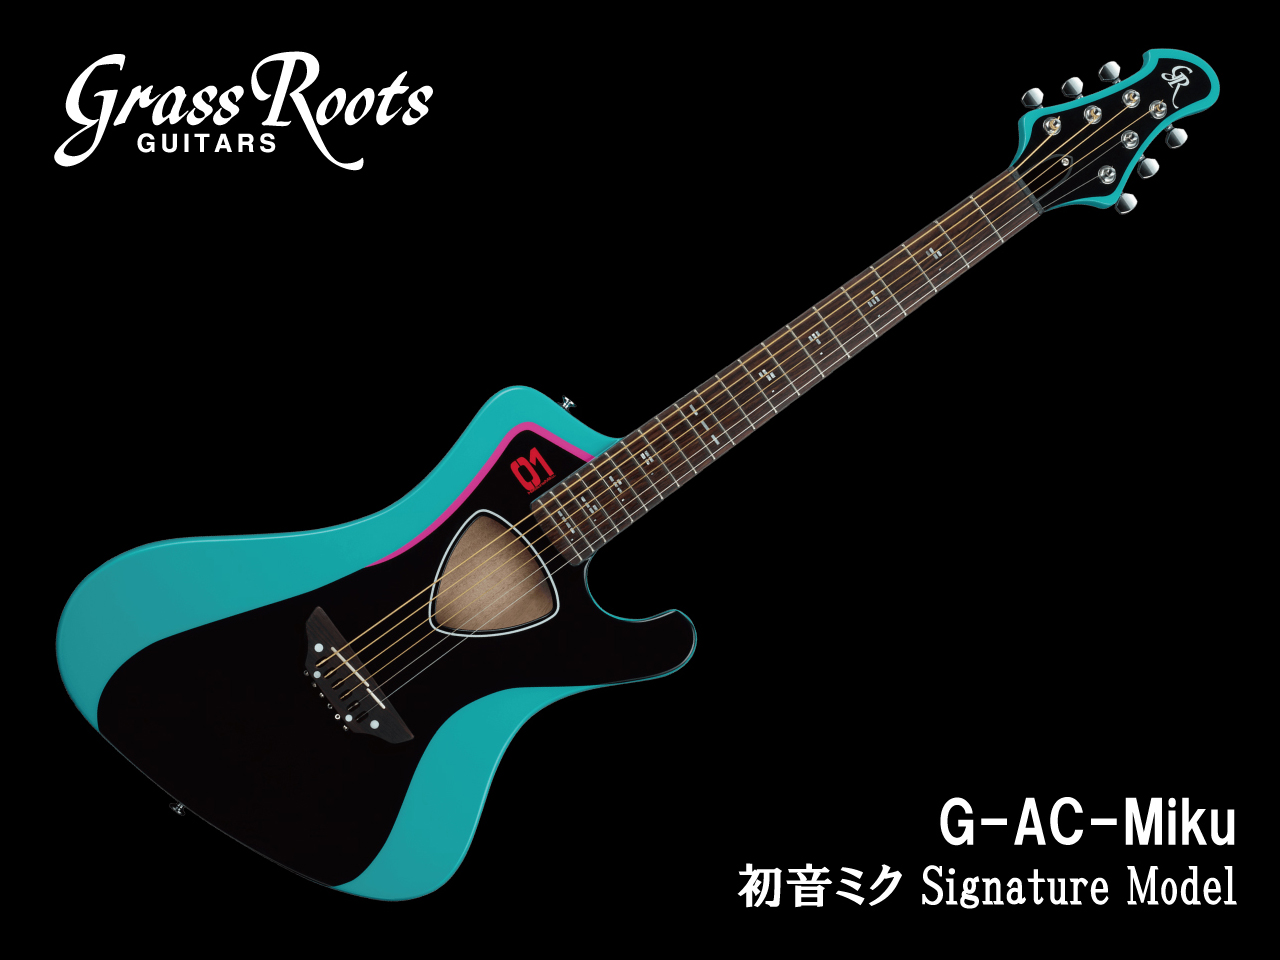 【受注生産】GrassRoots(グラスルーツ) G-AC-Miku / アコースティックギター (初音ミク モデル)